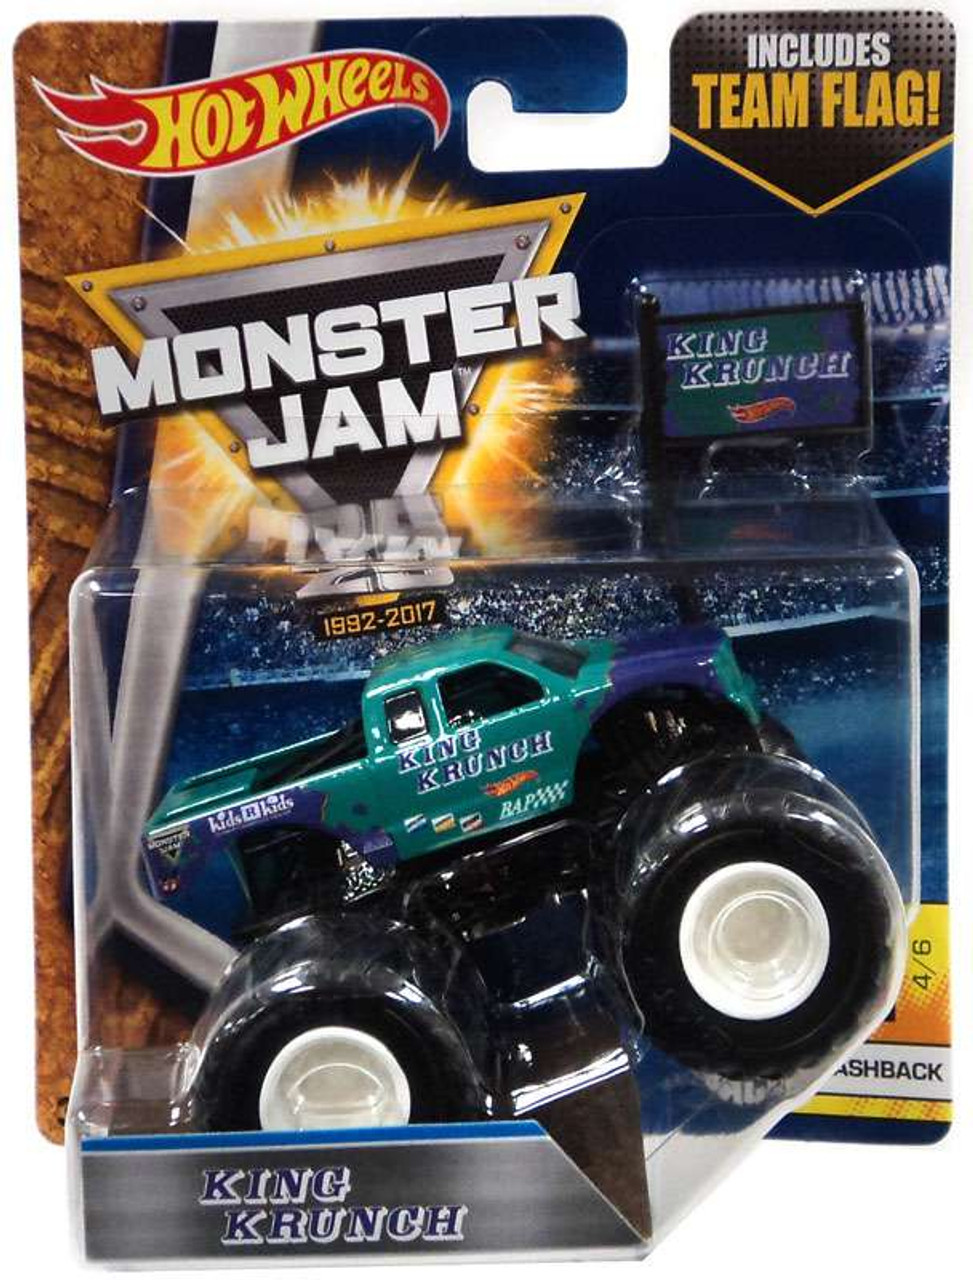 king krunch monster truck toy